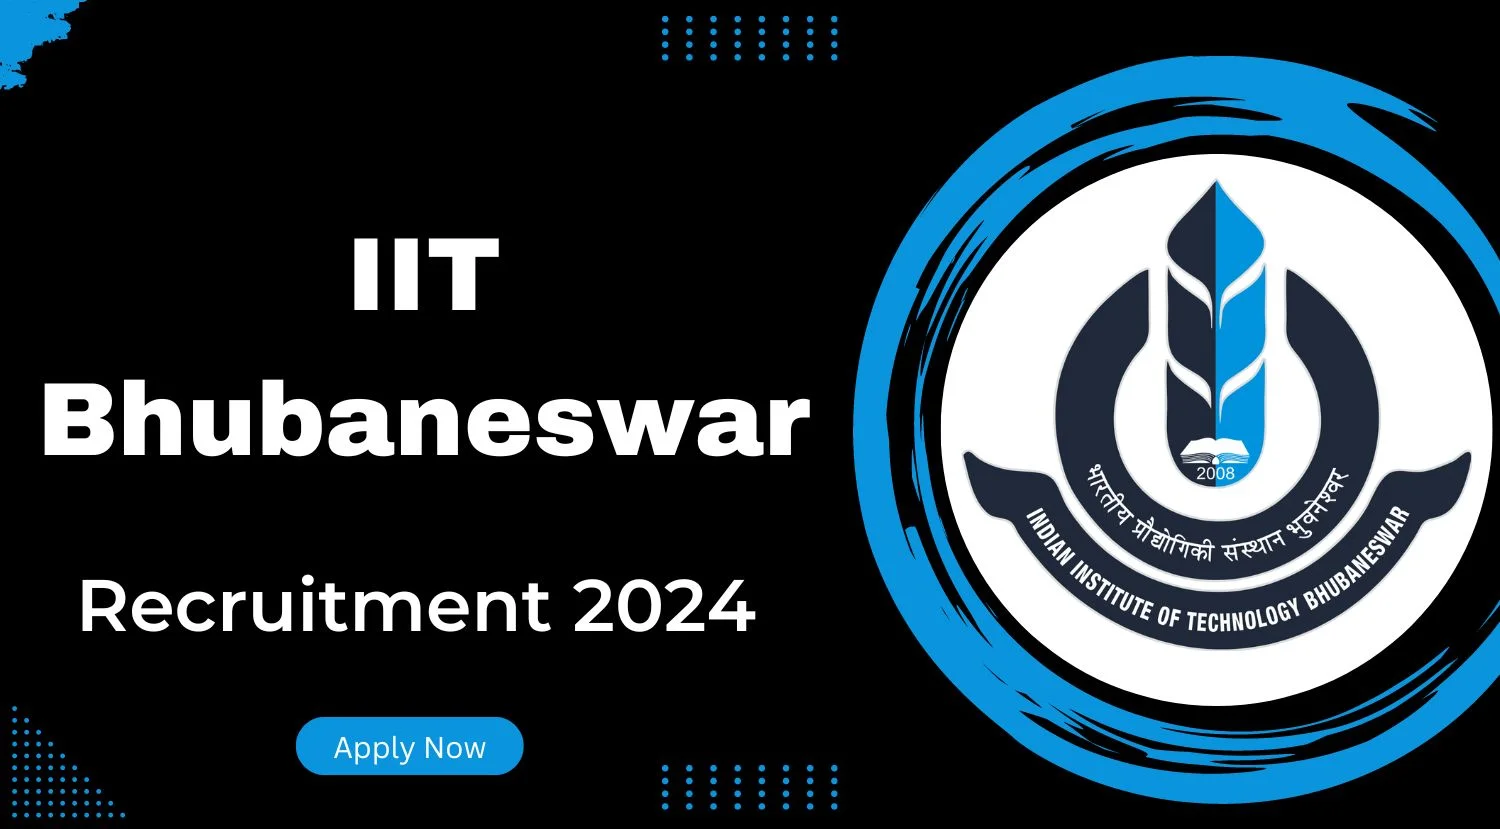 IIT Bhubaneswar Research Associate-III Recruitment 2024